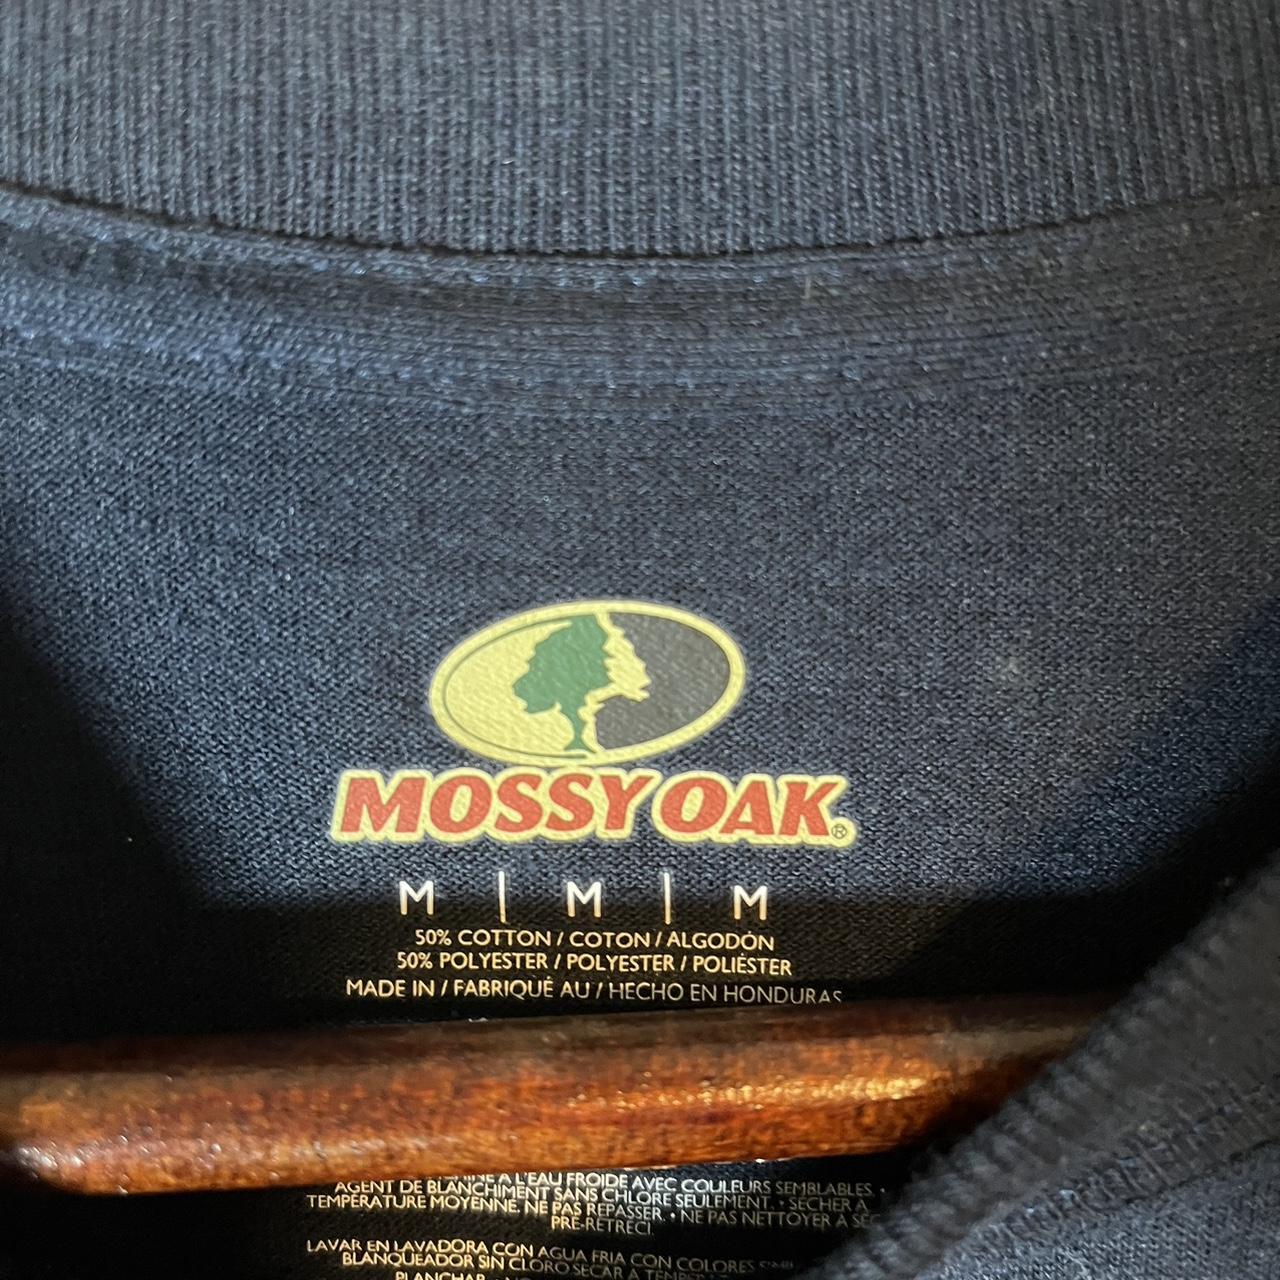 mossy oak t nice blue with chrome #mossyoak - Depop